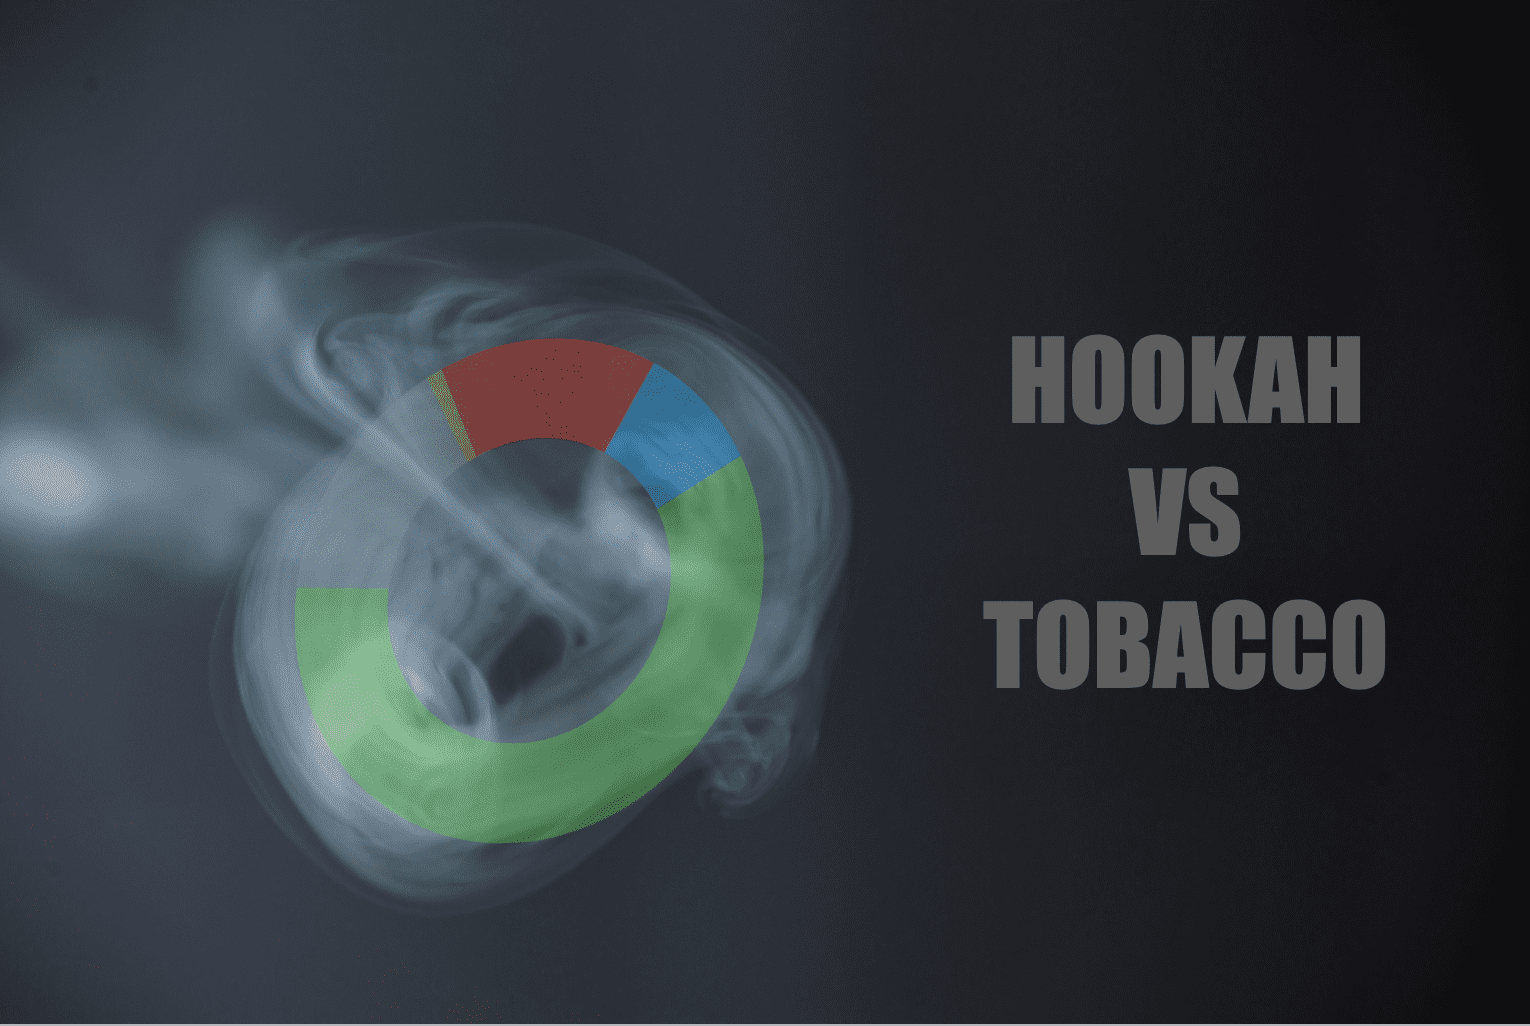 シーシャの煙に含まれる成分・物質とその割合、タバコとの比較 